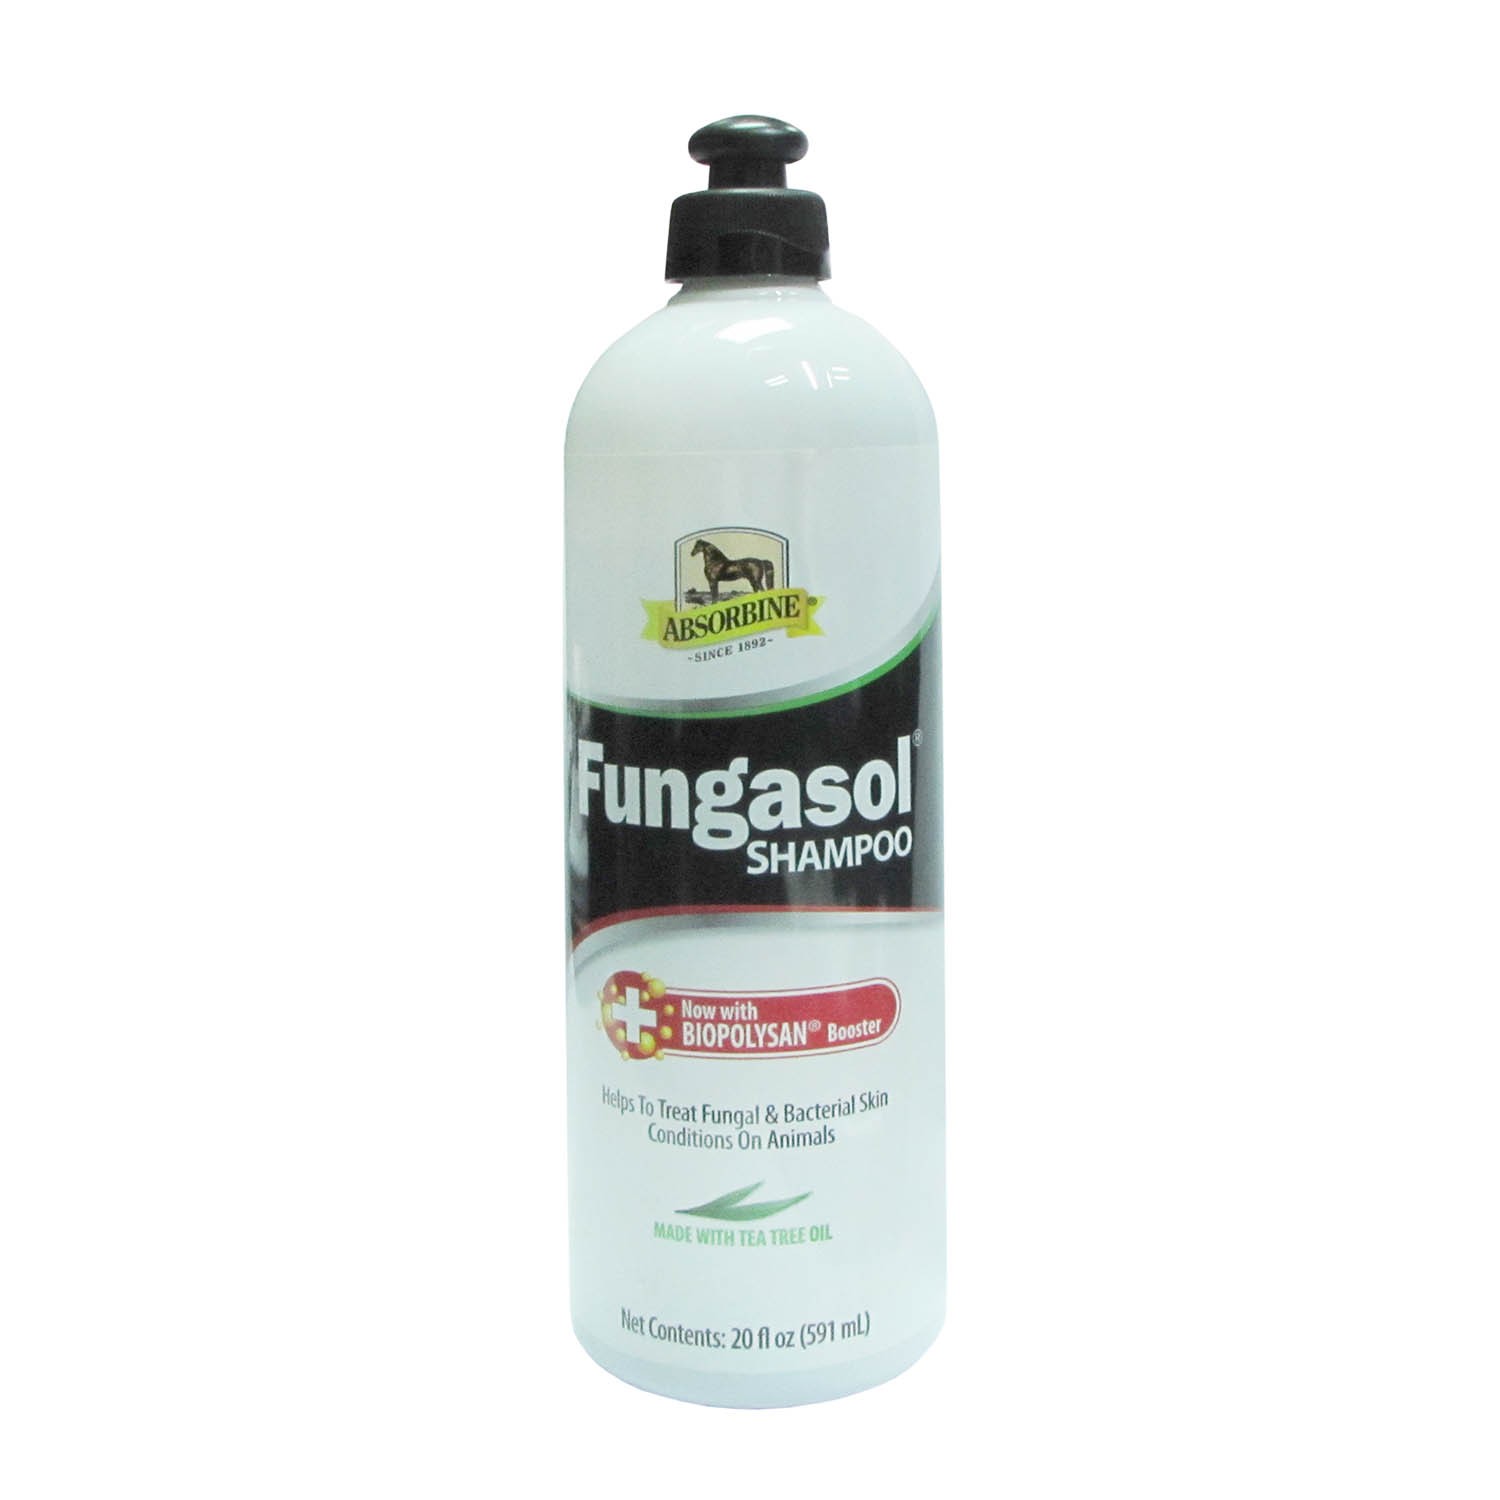 Fungasol Shampoo